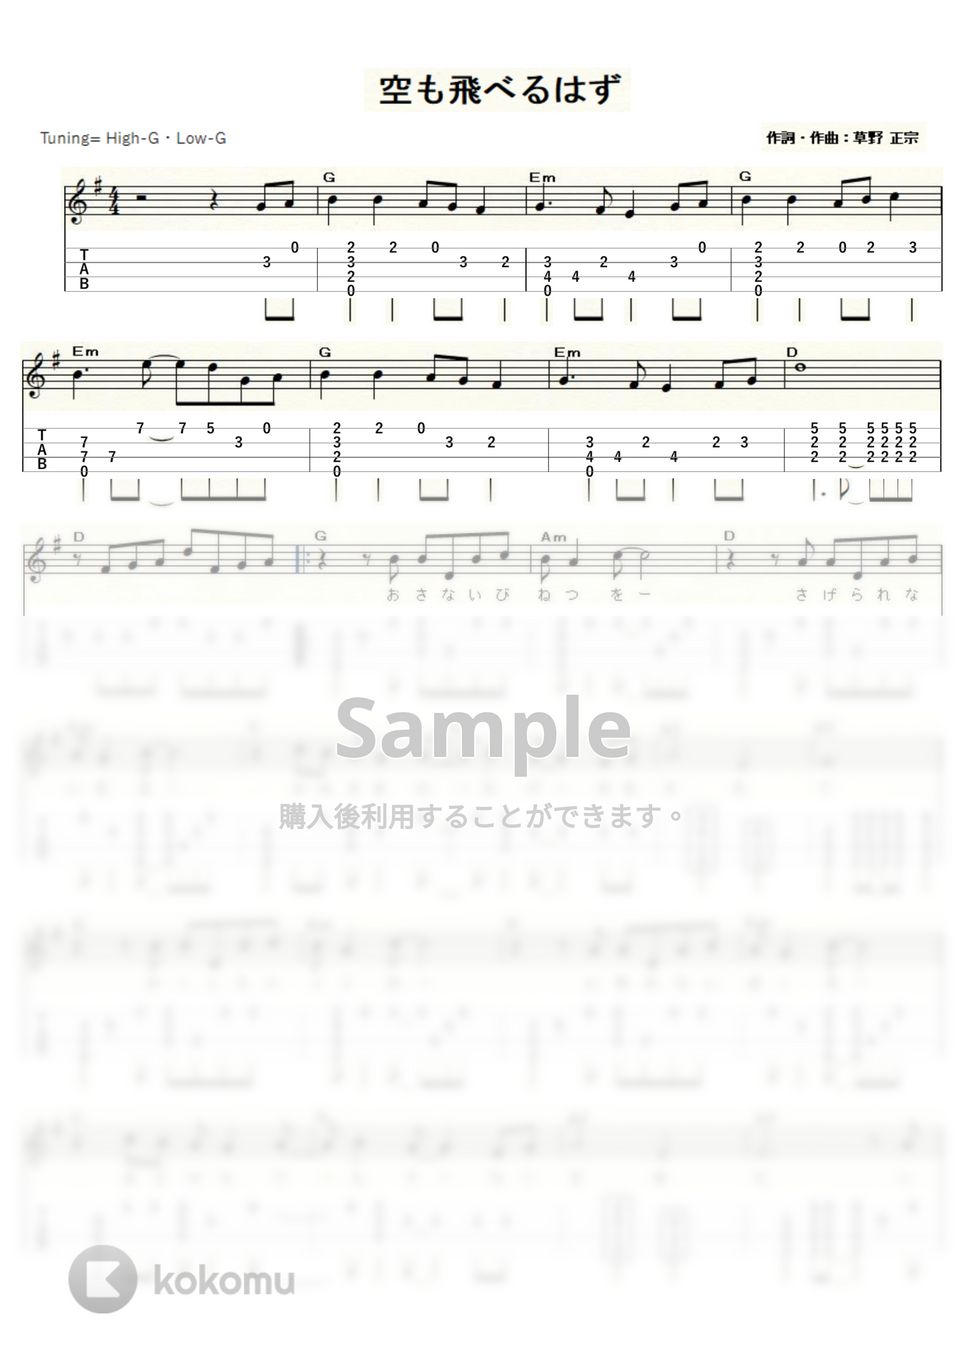 スピッツ - 空も飛べるはず (ｳｸﾚﾚｿﾛ/High-G・Low-G/中級) by ukulelepapa